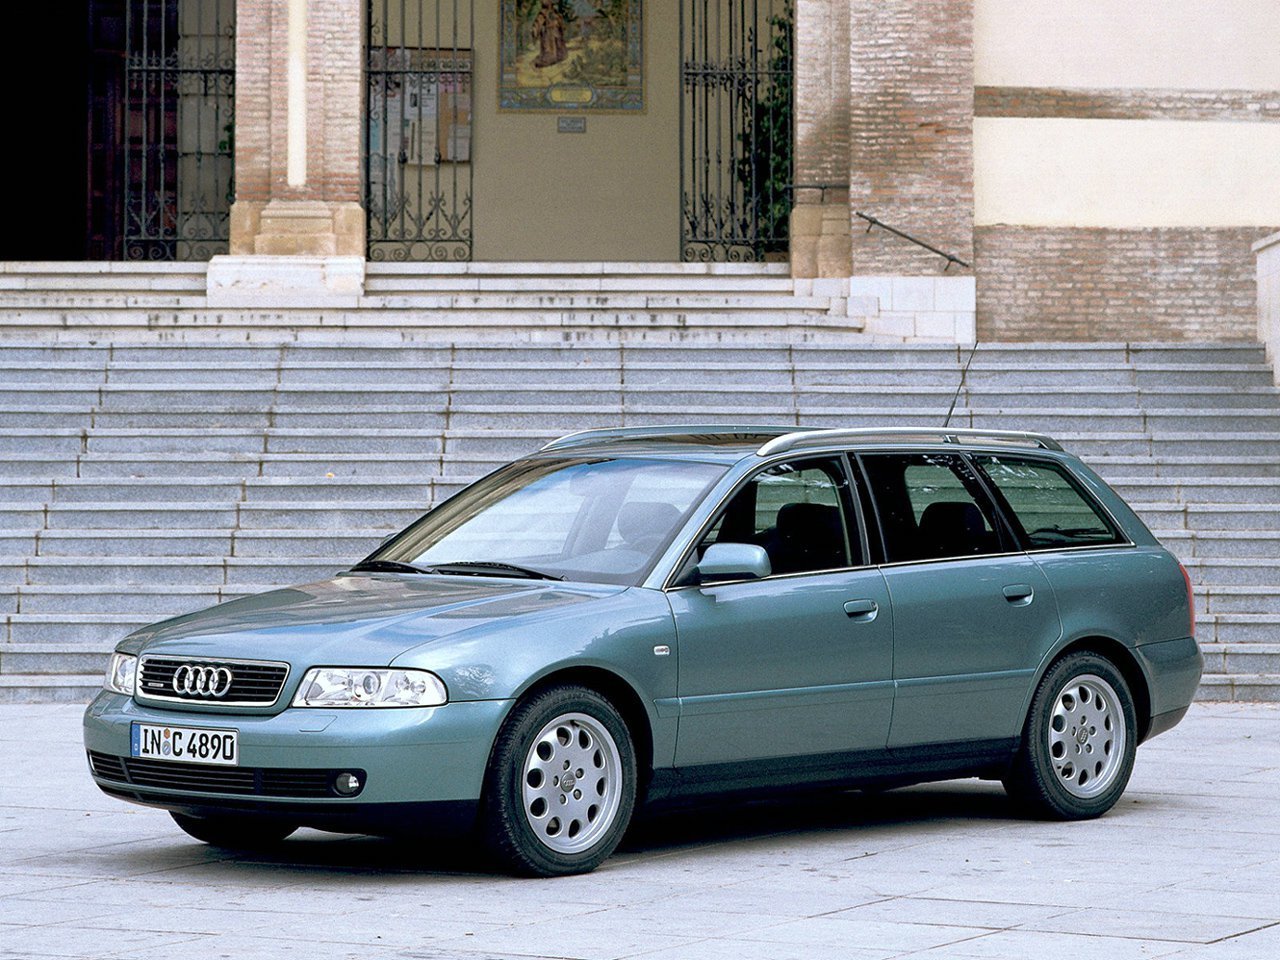 Расход газа трёх комплектаций универсала пять дверей Audi A4. Разница стоимости заправки газом и бензином. Автономный пробег до и после установки ГБО.